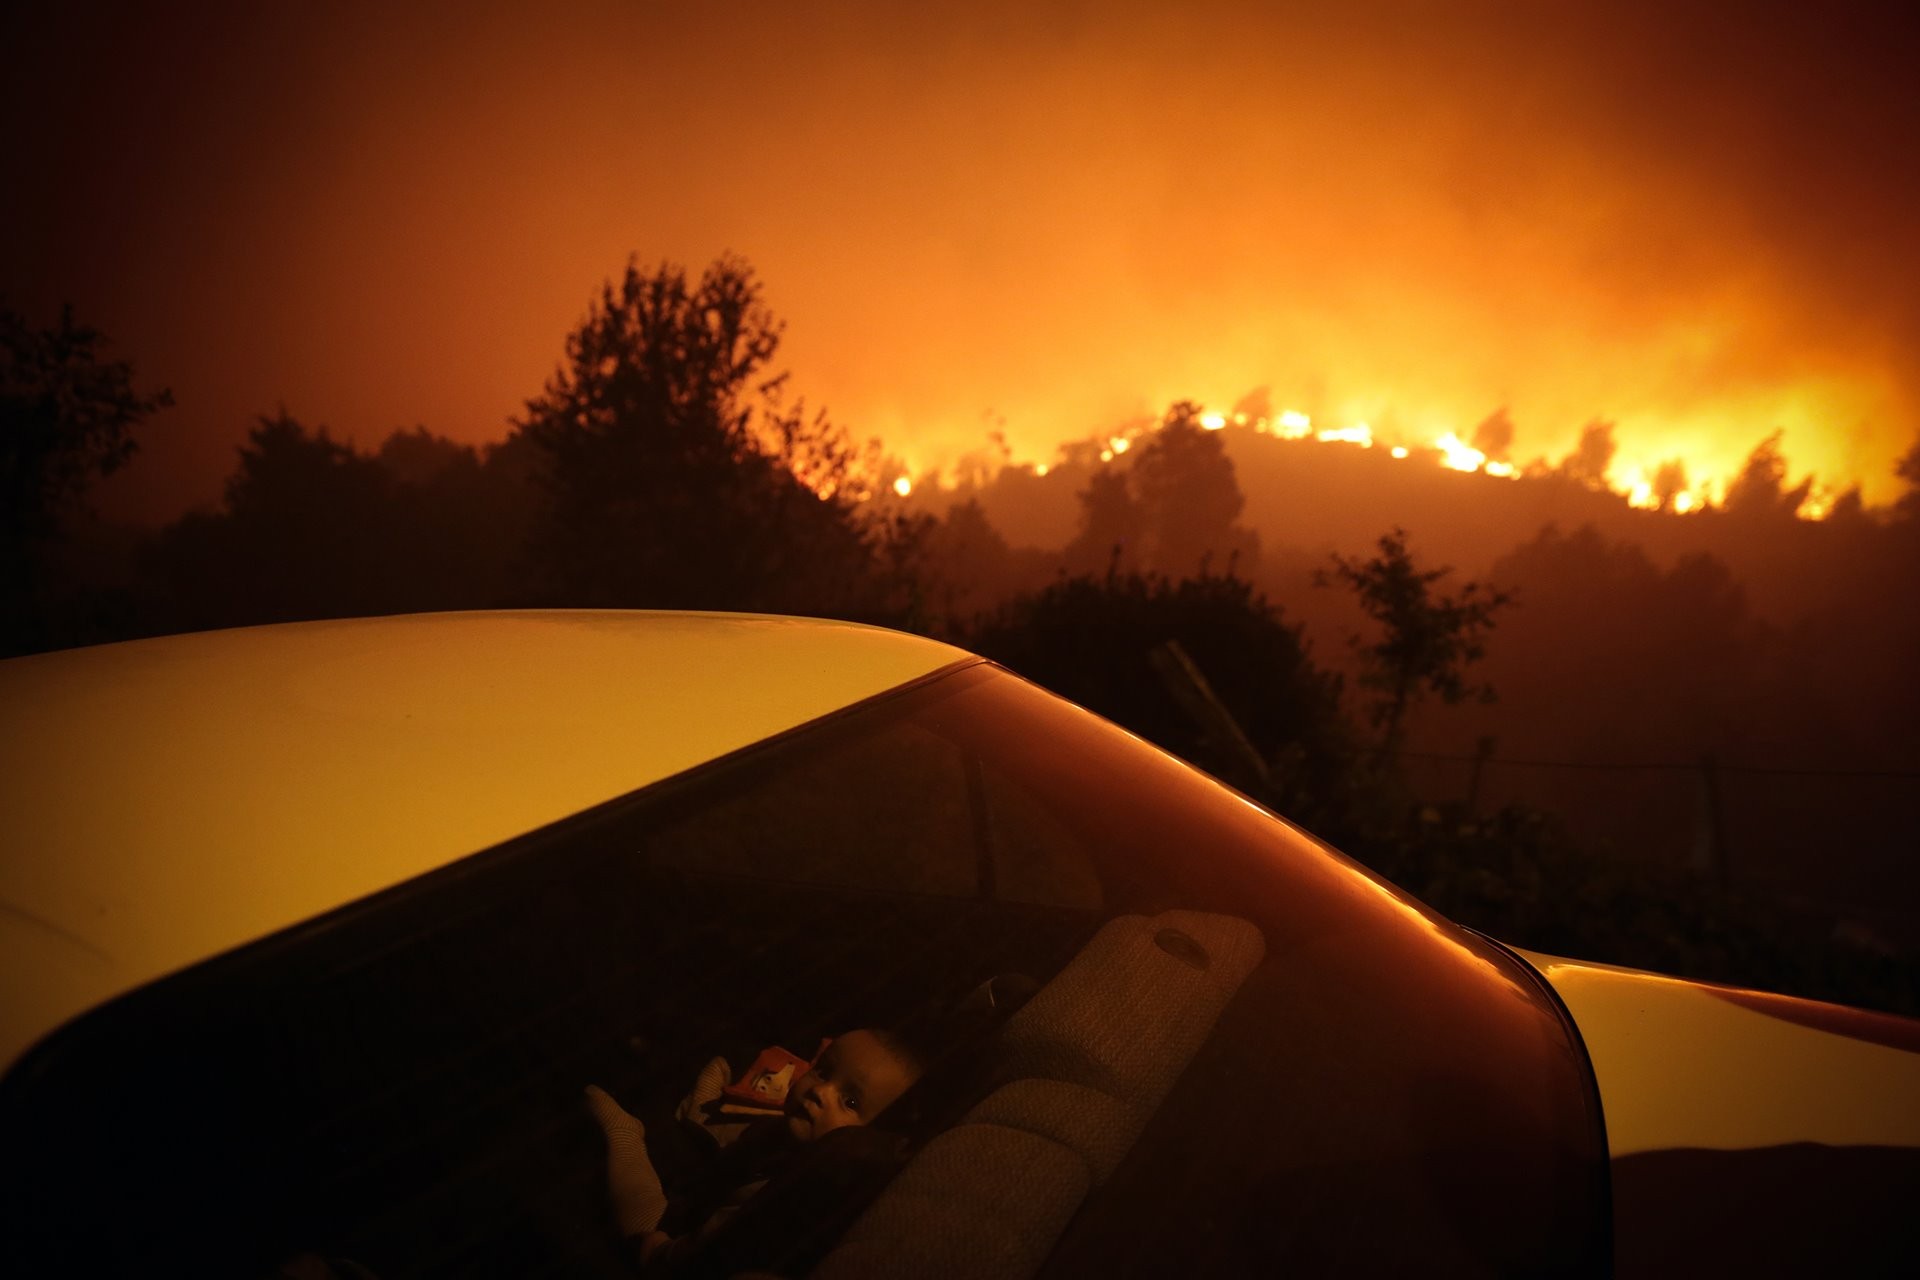 3 место в категории Главные новости, 2021. Ребёнок в машине на фоне лесного пожара в Оливейра-де-Фрадеш, Португалия. Автор Нуно Андре Феррейра